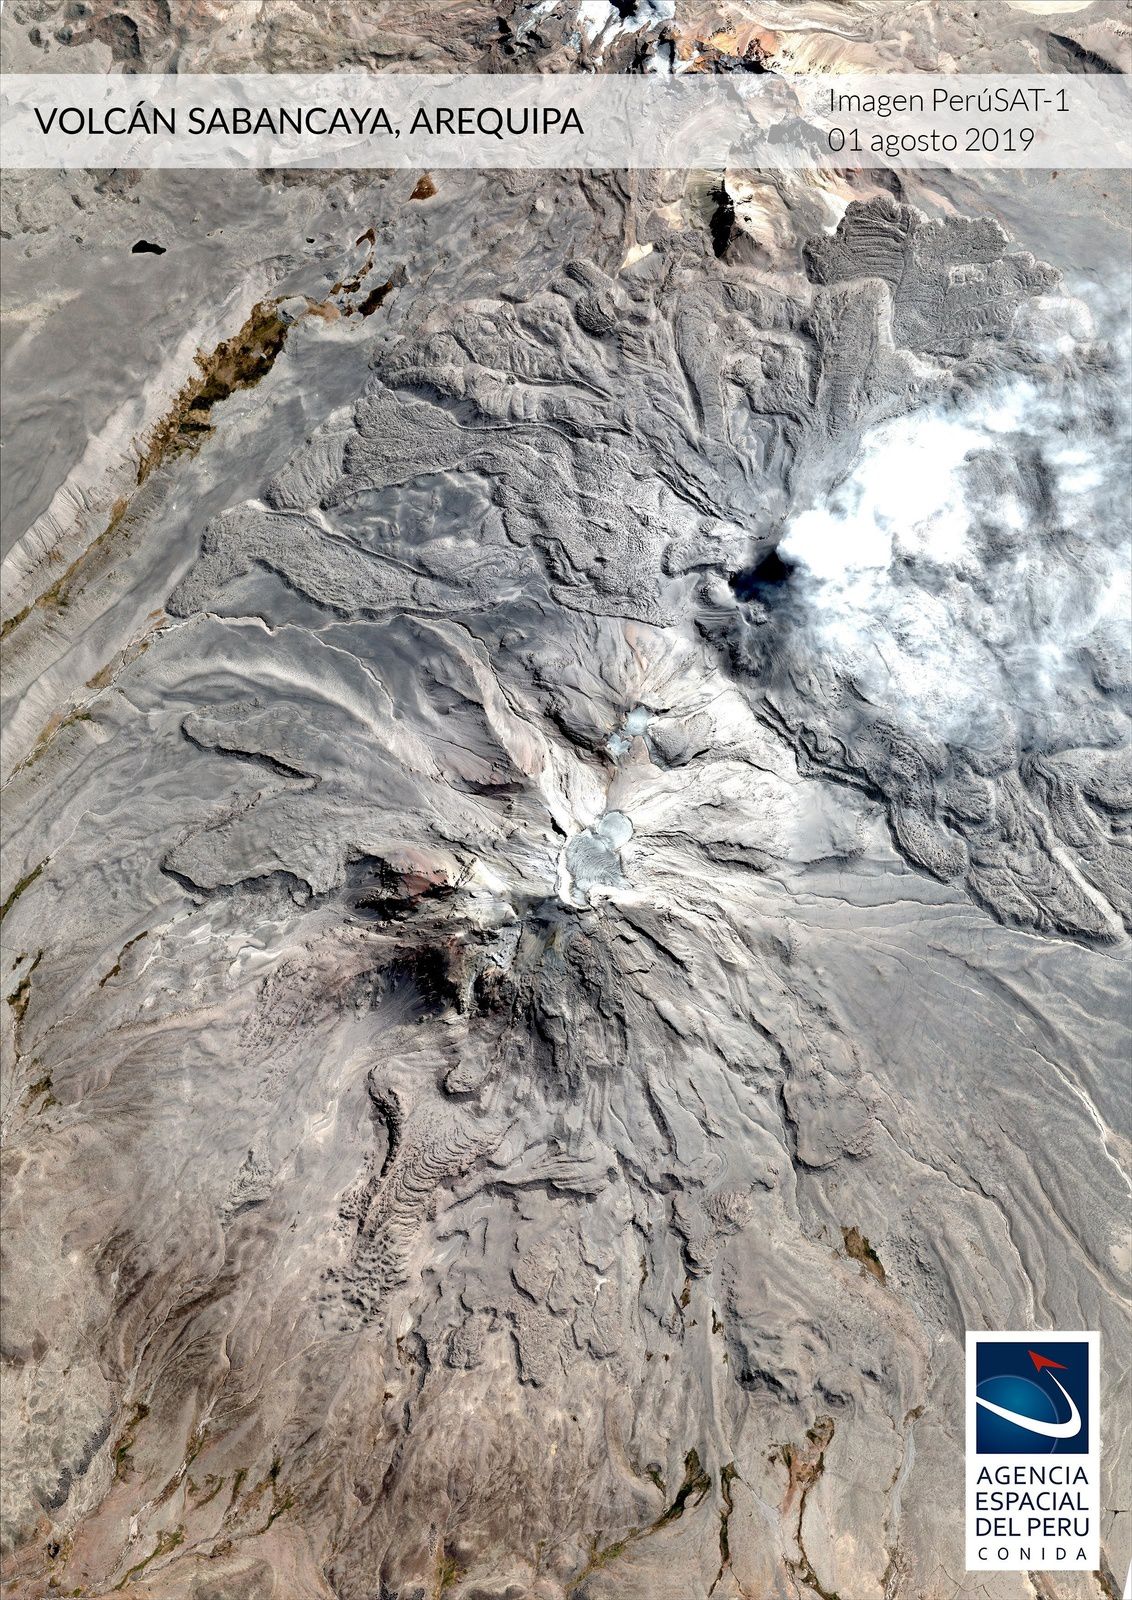 Sabancaya - photo Agencia espacial del Peru / Conida du 01.08.2019